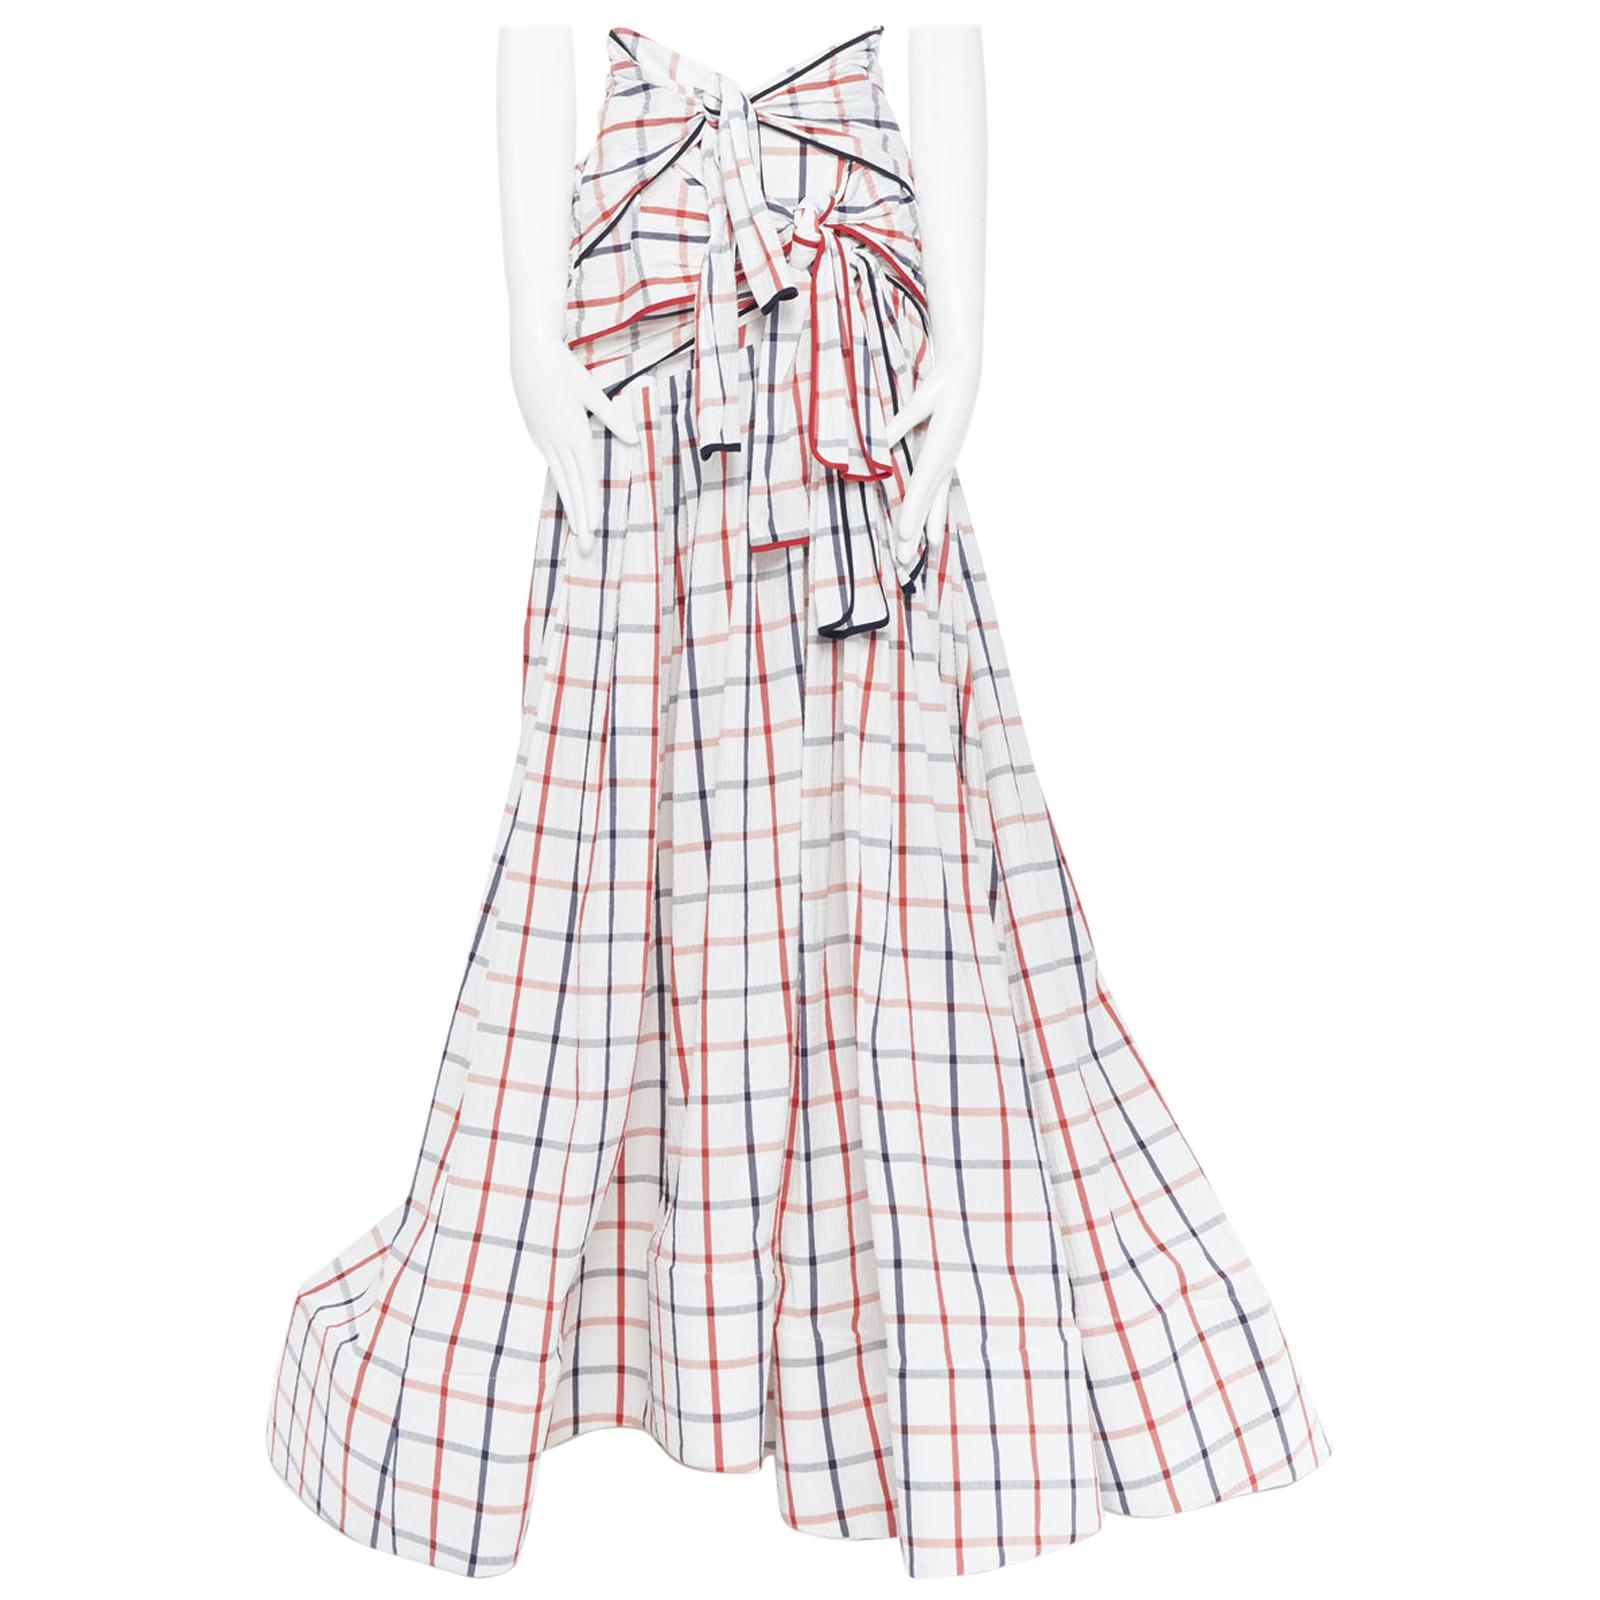 new ROSIE ASSOULIN SS18 Runway Tri-Tie check cotton seersucker gown skirt US2